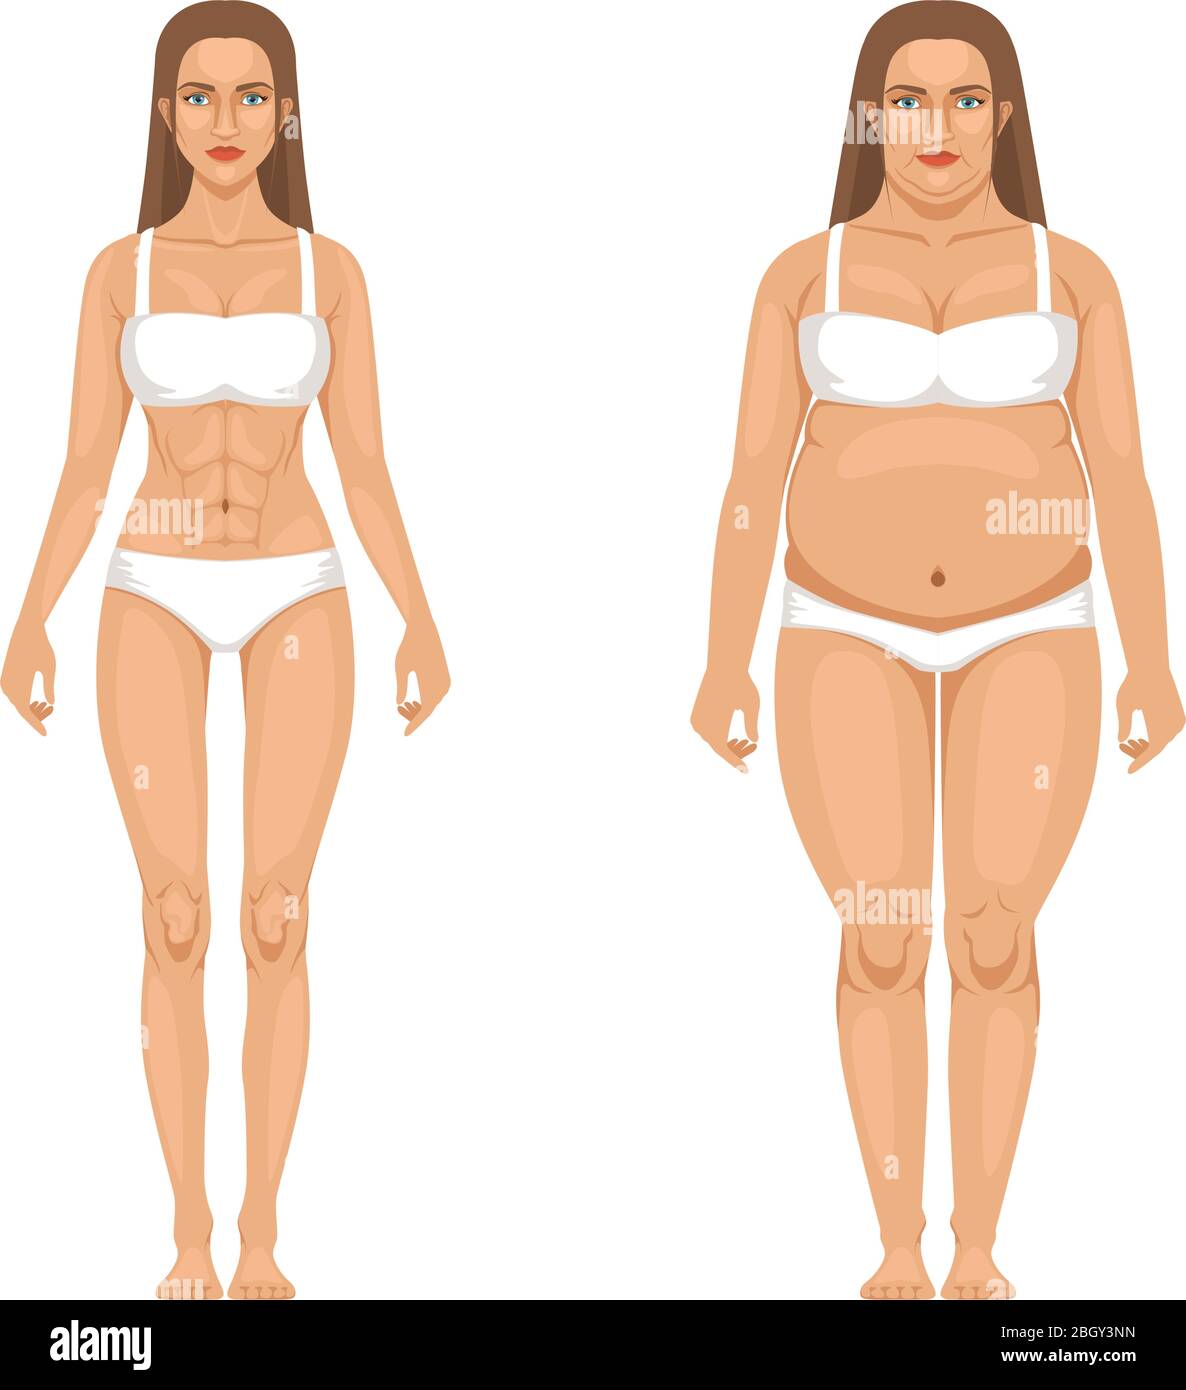 Perte de poids de femme avec sport et régime. Illustrations vectorielles en style dessin animé. Femme transformation du corps, surpoids et mince Illustration de Vecteur